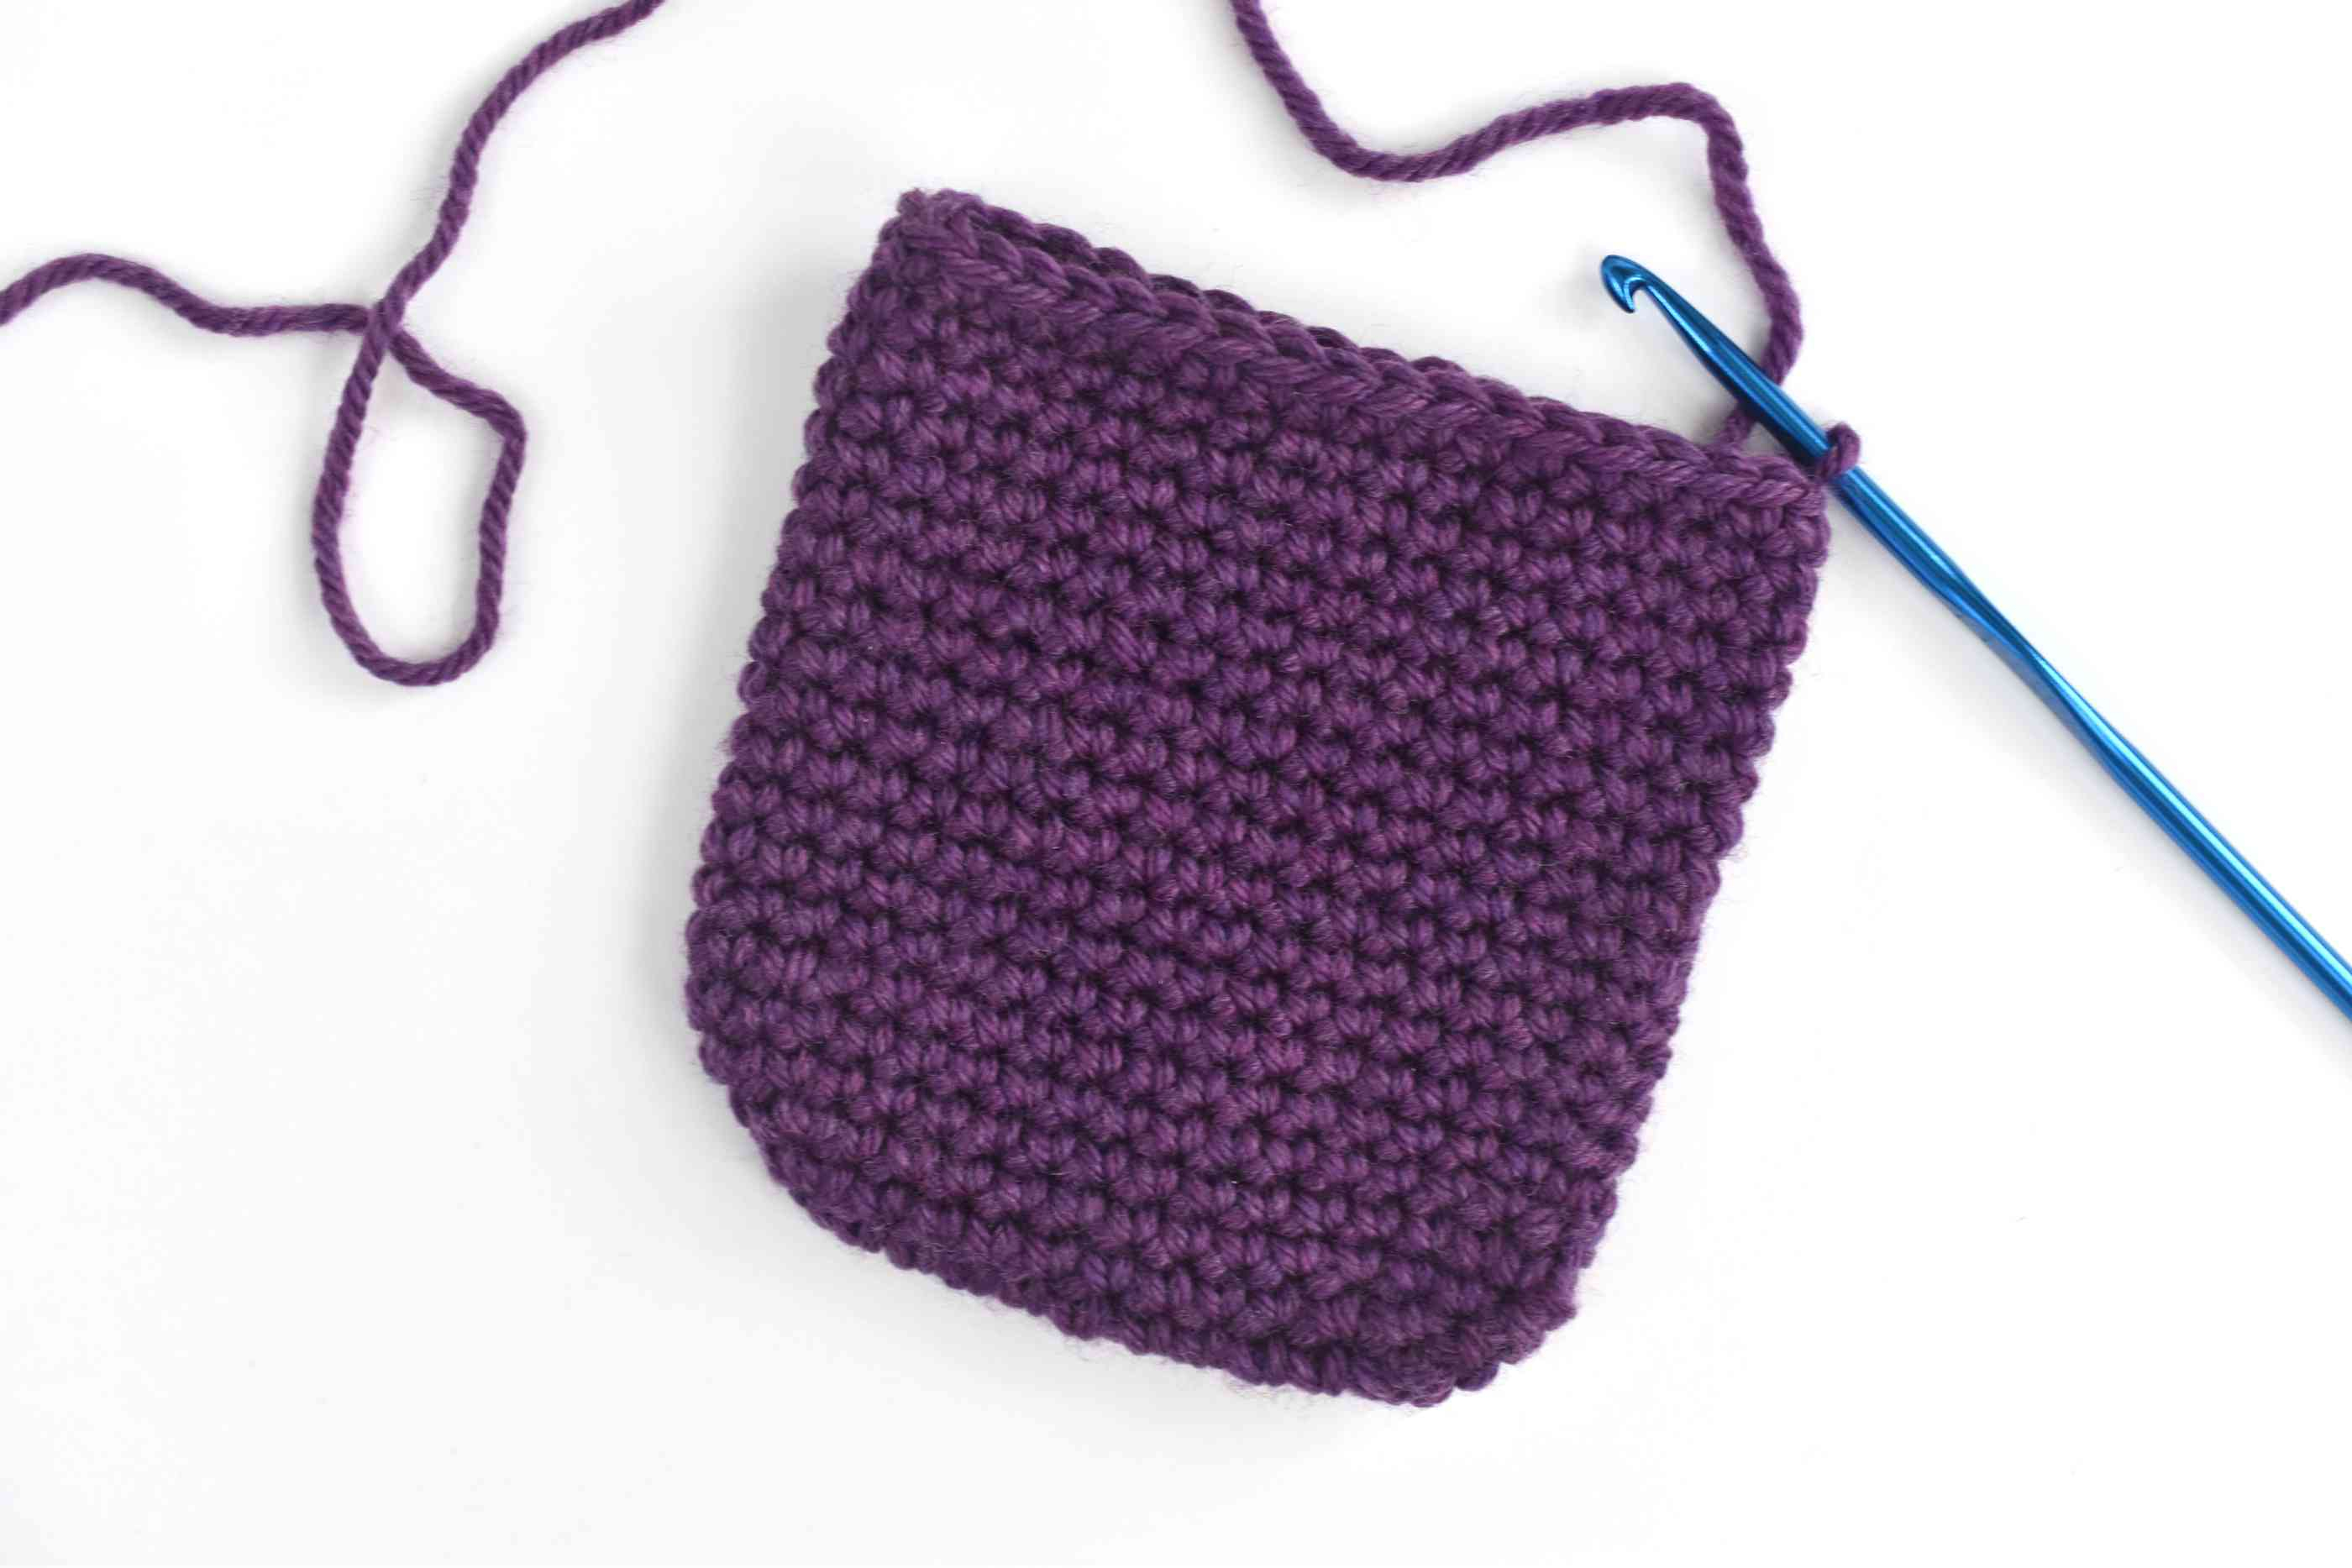 Crochet Slippers Pattern Free Simple Crochet Slippers Free Pattern